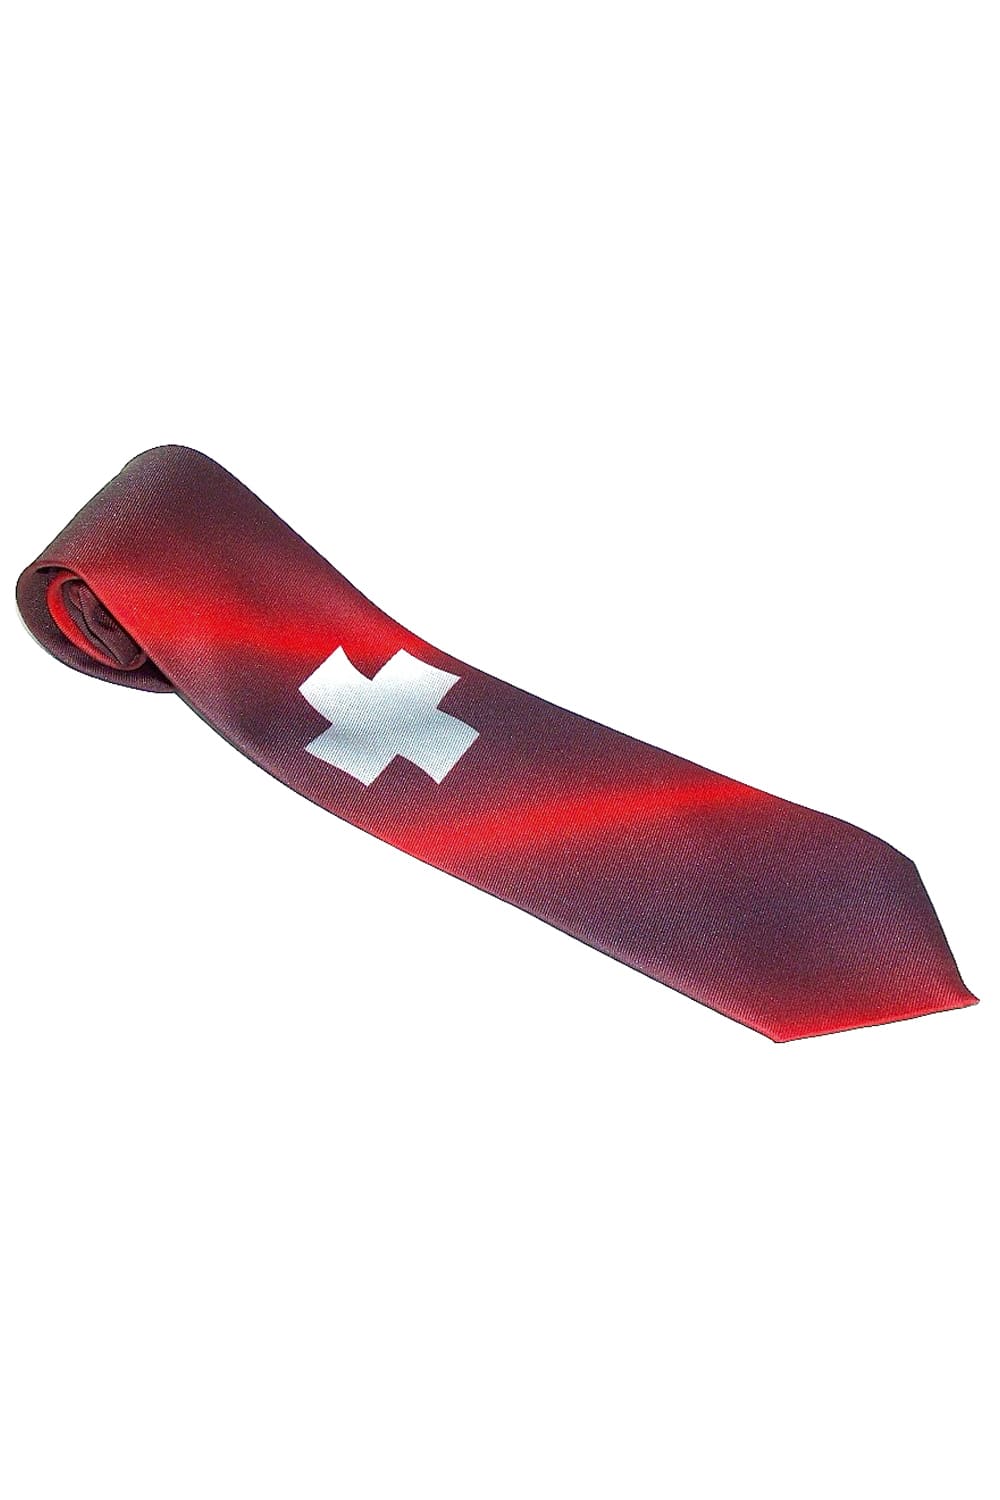 Ein lustiges und originelles Geschenk für Maenner. Die Schweiz Krawatte ist auch ein perfektes Geschenk fuer Fussball Fans oder auch als Mitbringsel aus der Schweiz. Krawatte mit Schweizer Kreuz